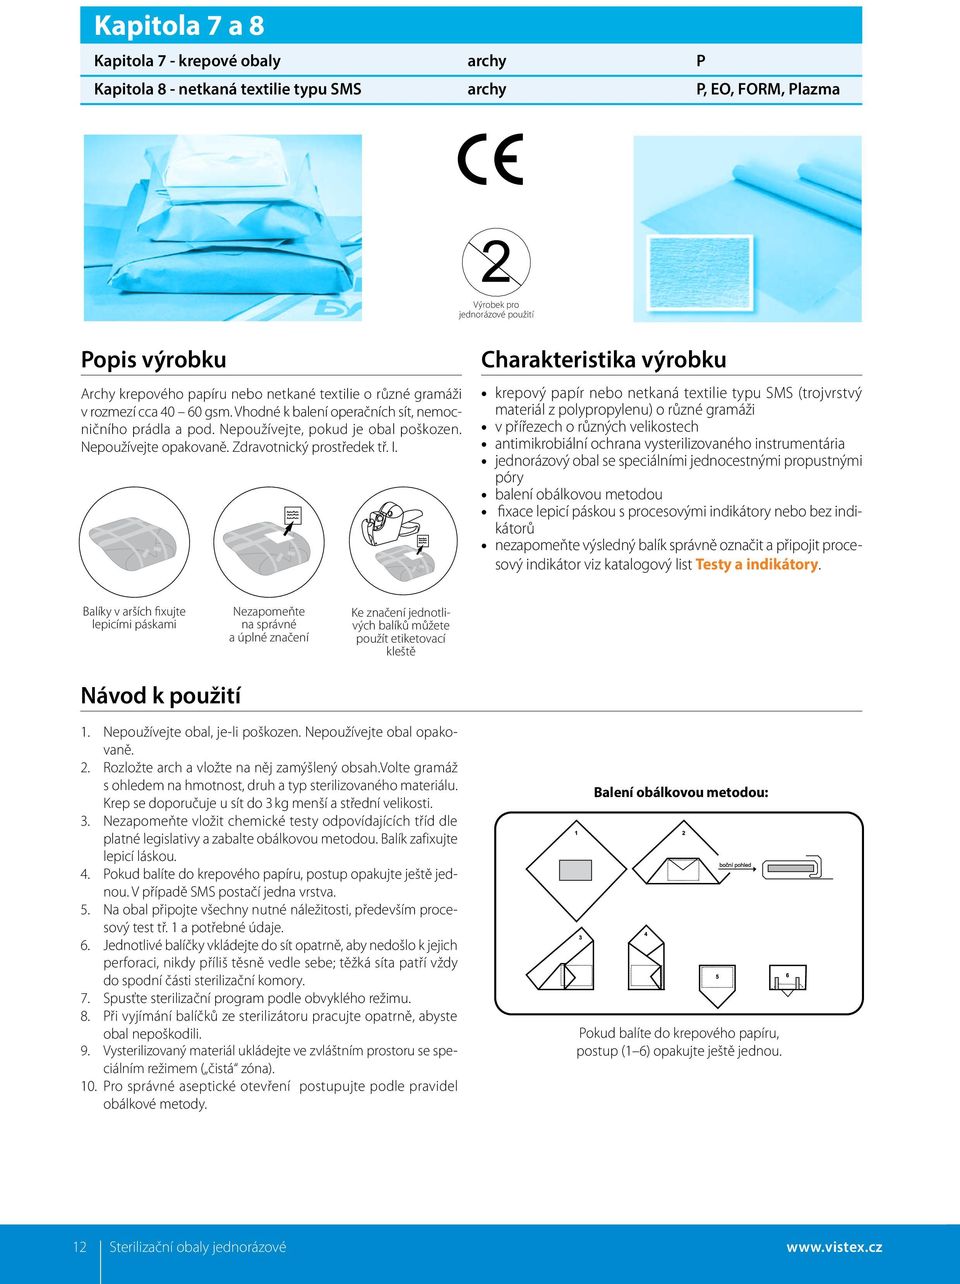 I. Charakteristika výrobku krepový papír nebo netkaná textilie typu SMS (trojvrstvý materiál z polypropylenu) o různé gramáži v přířezech o různých velikostech antimikrobiální ochrana